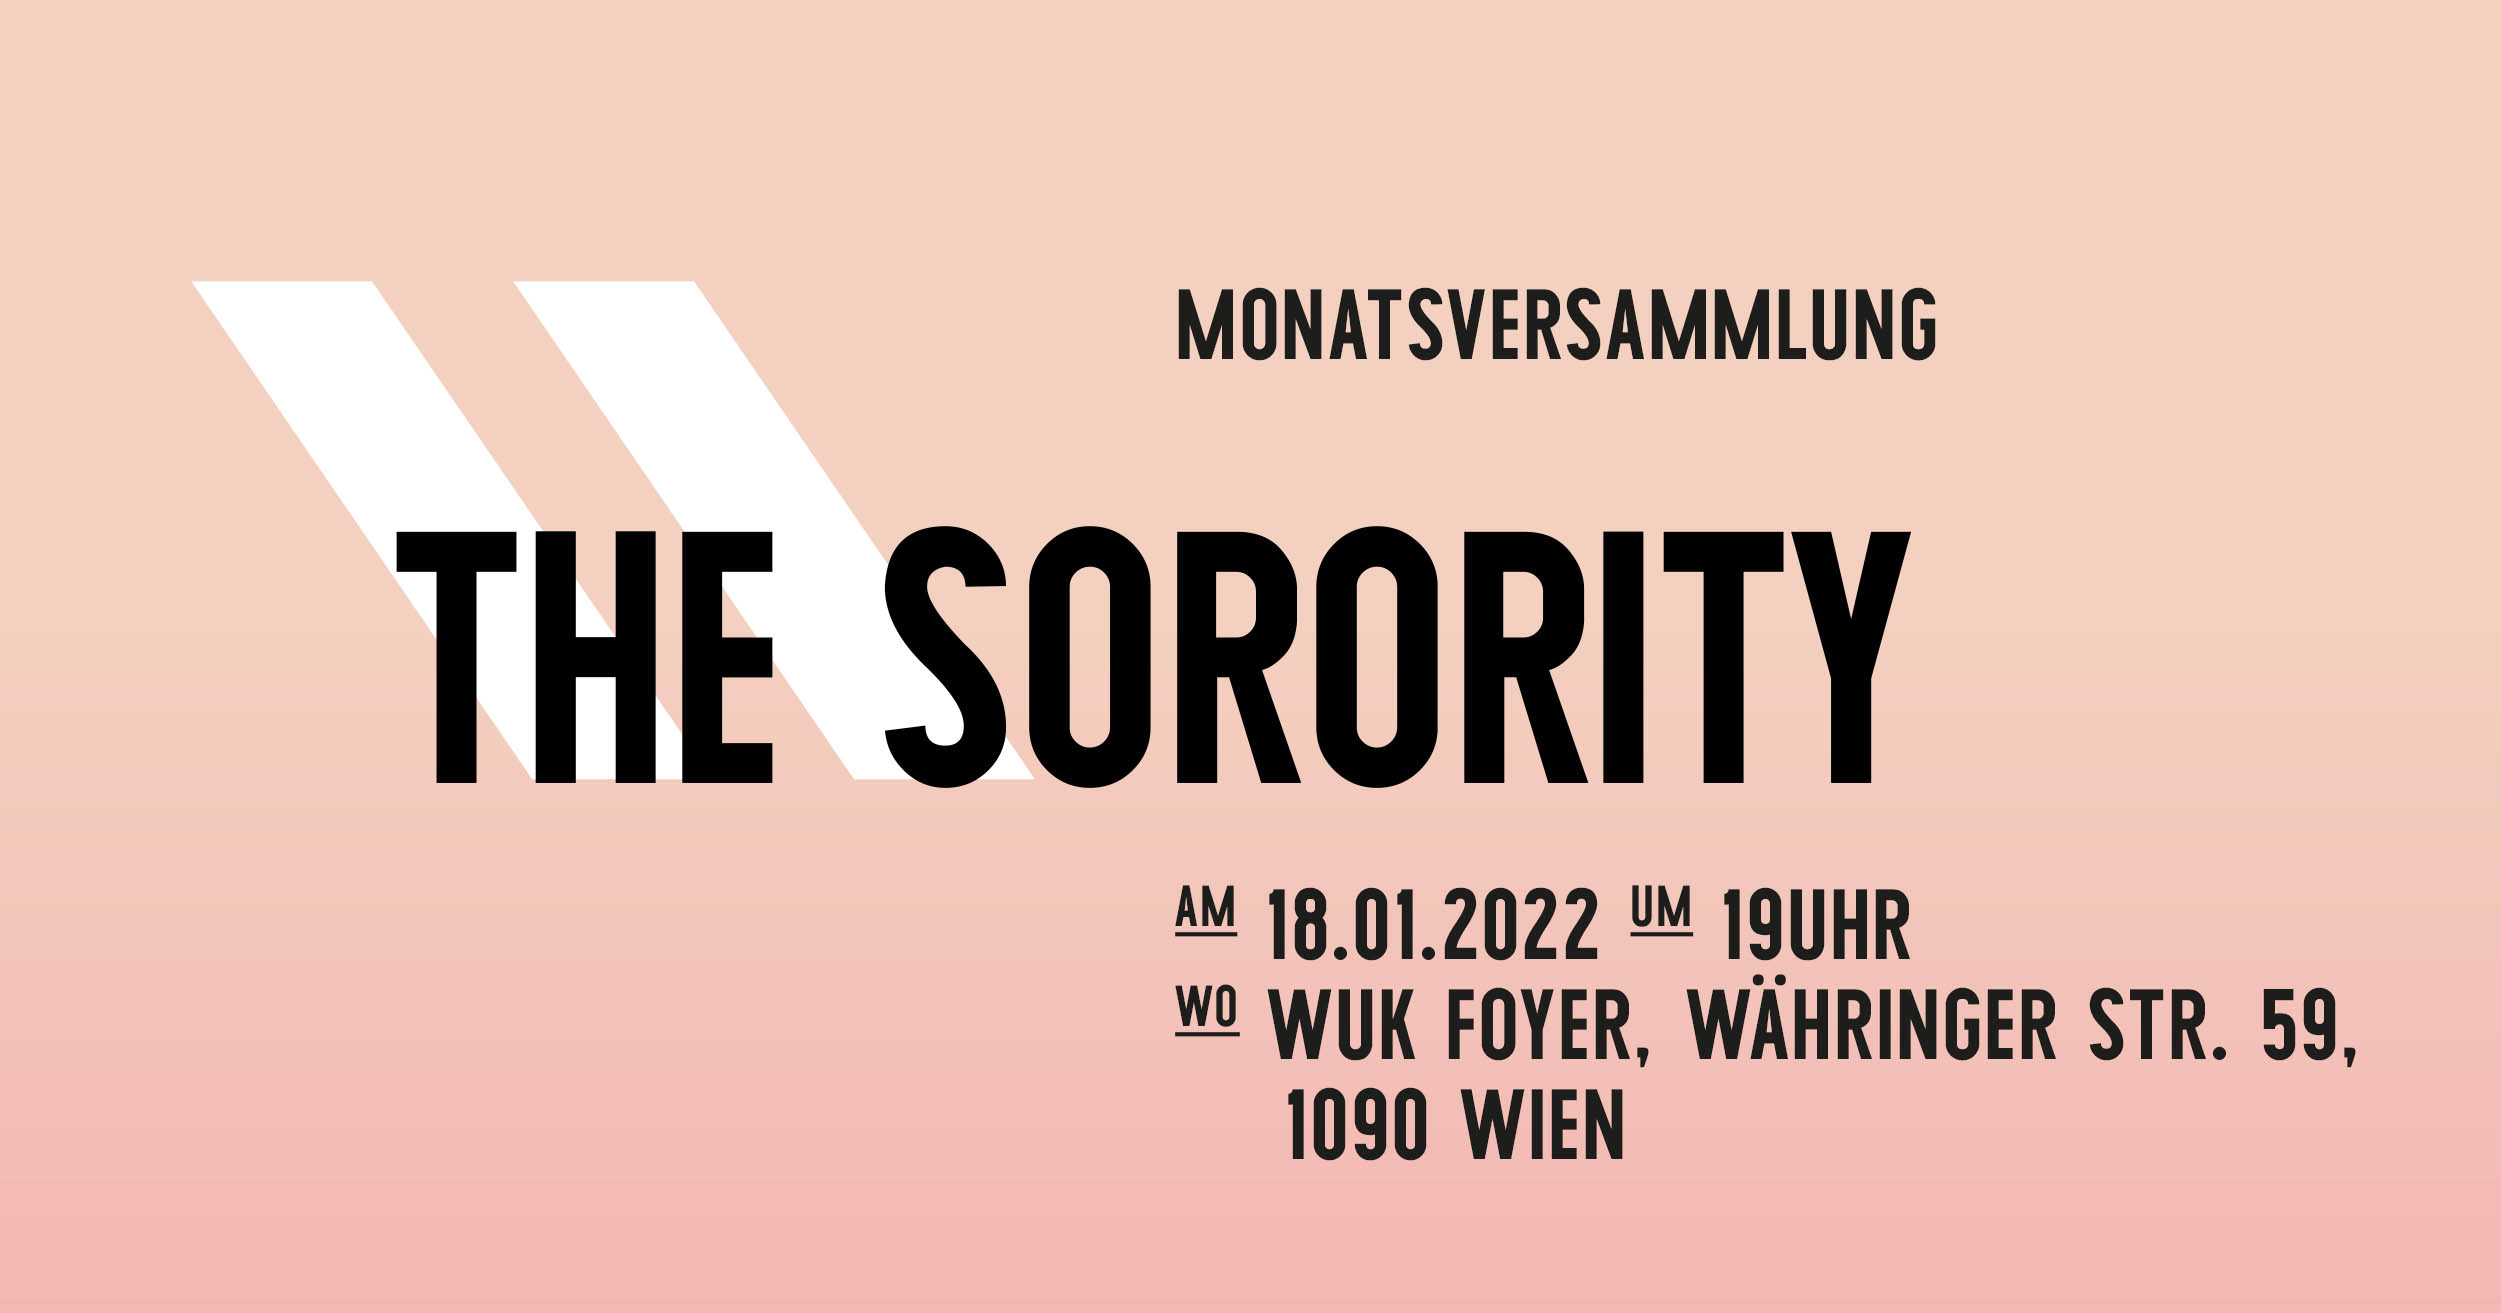 Sorority MV im Jänner 2022